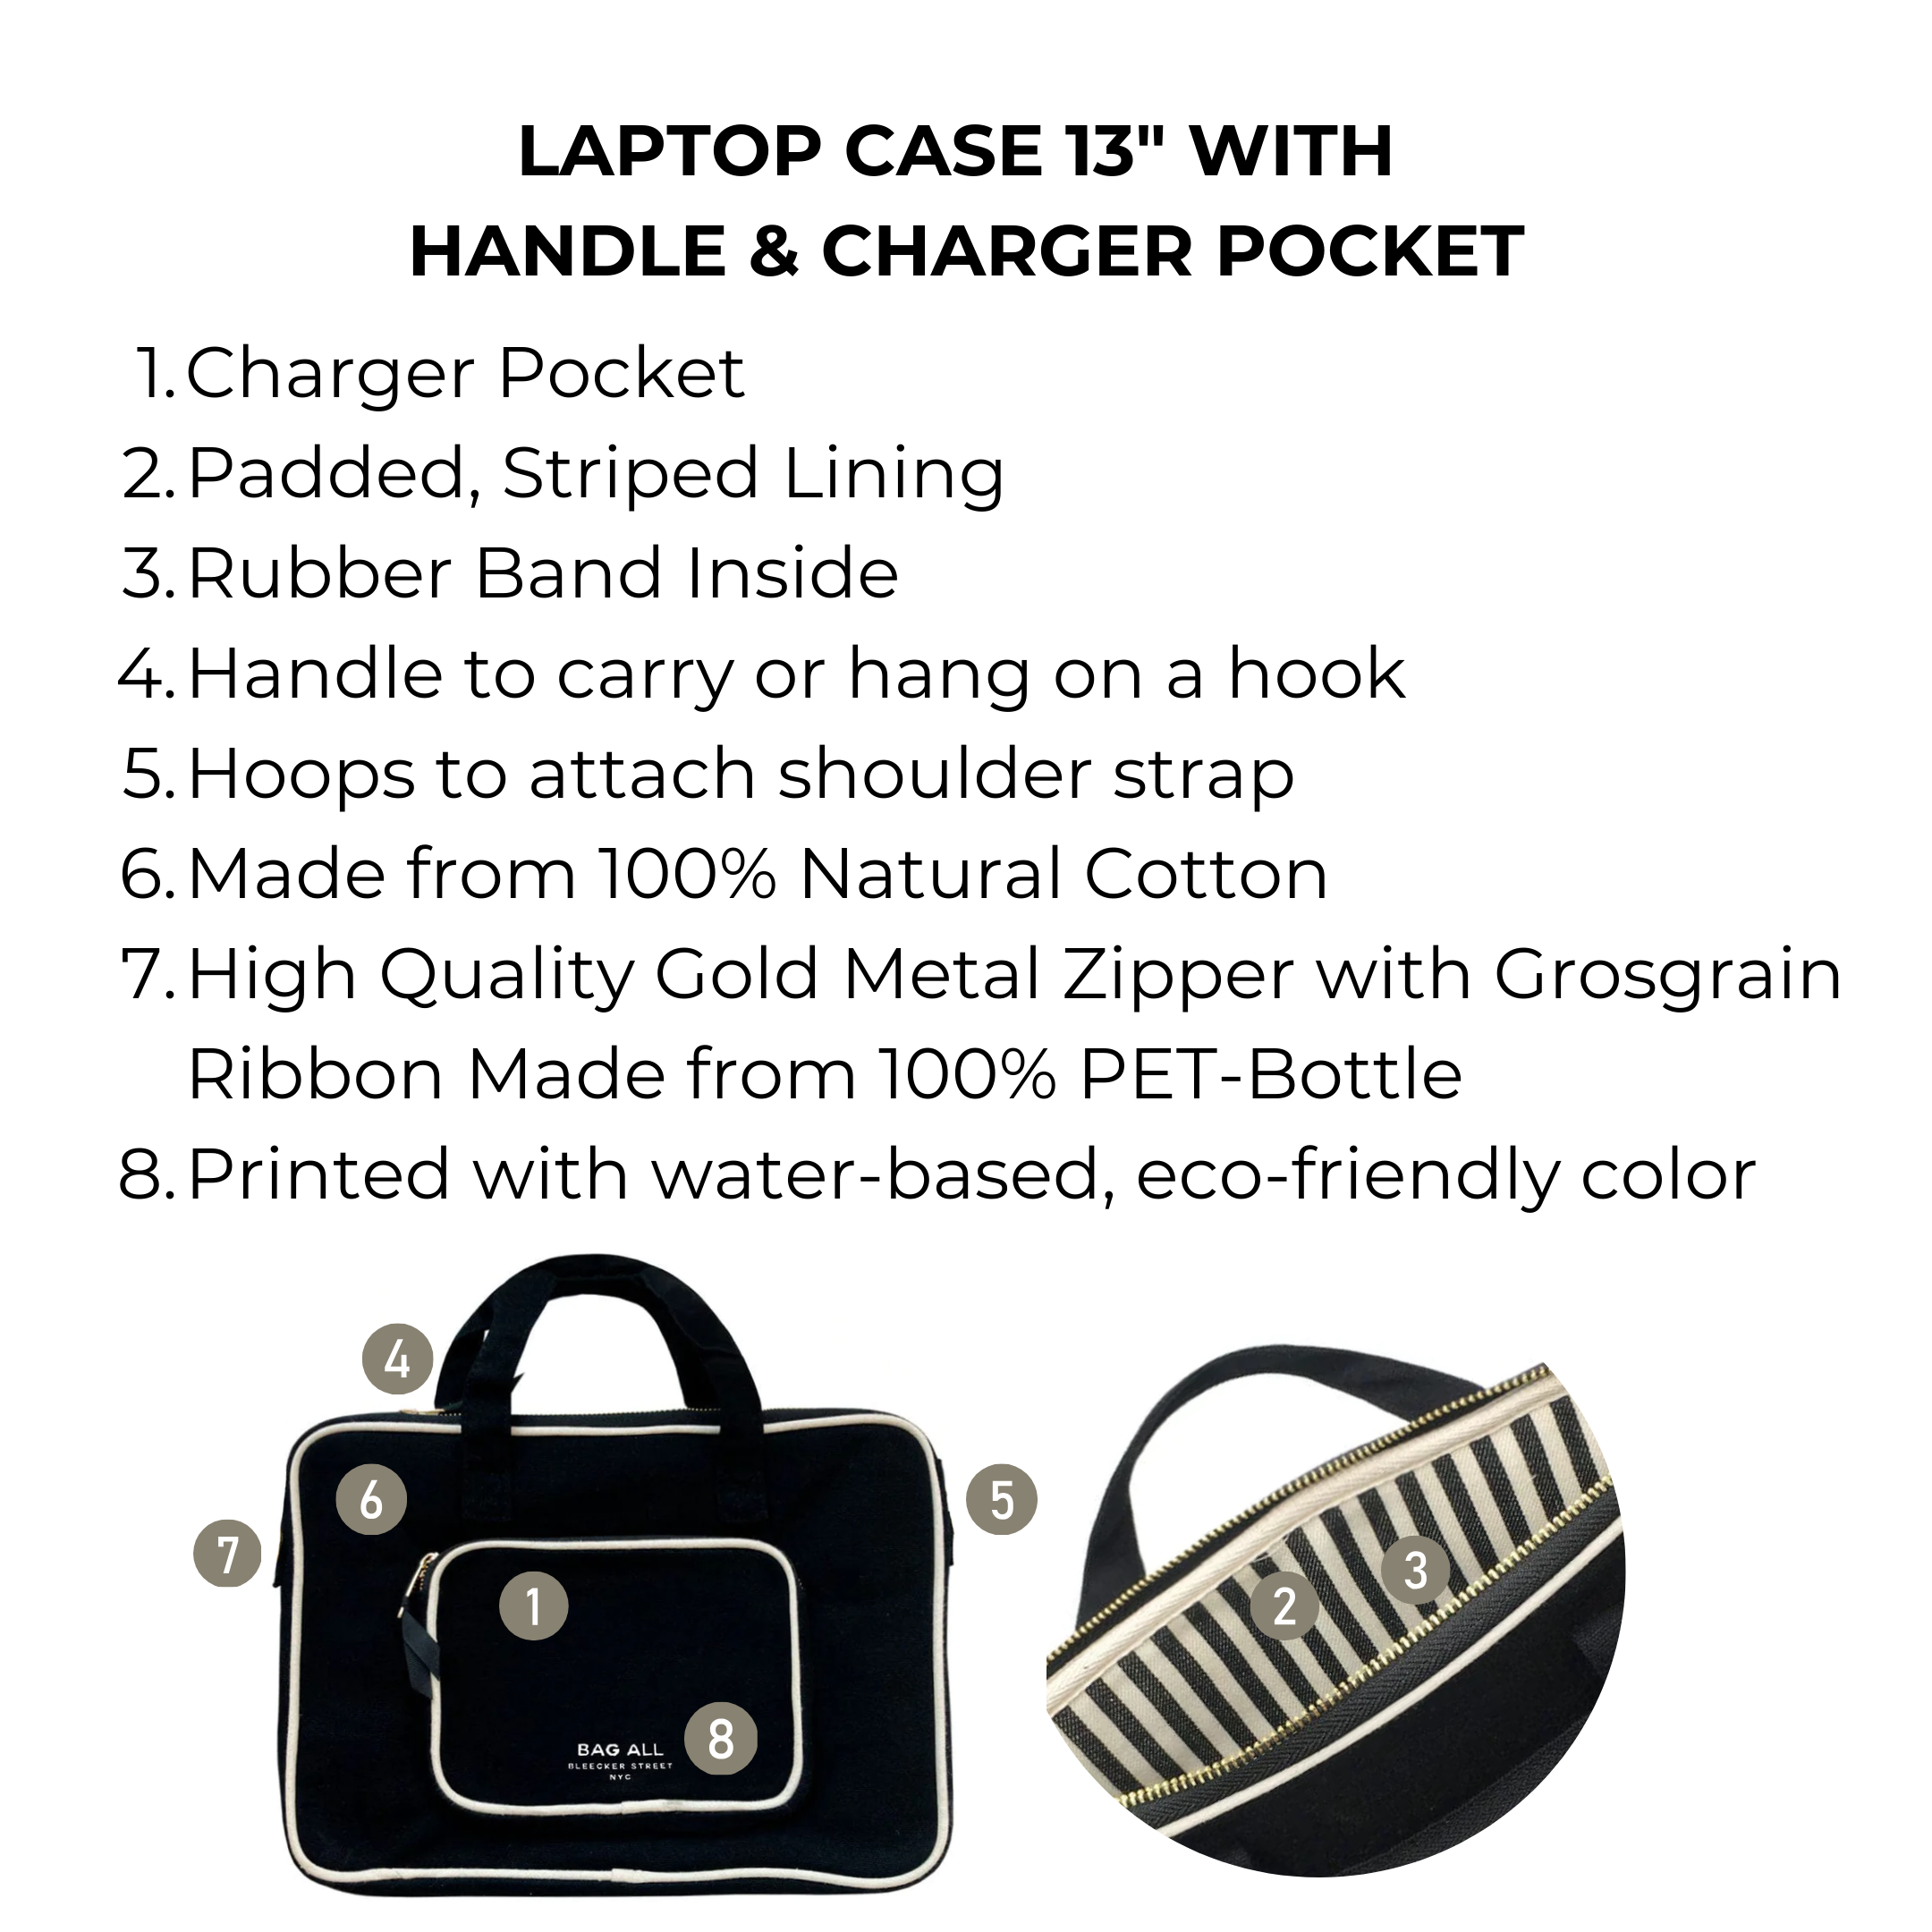 Laptop Case, Charger Pocket, 13" Black | Bag-all